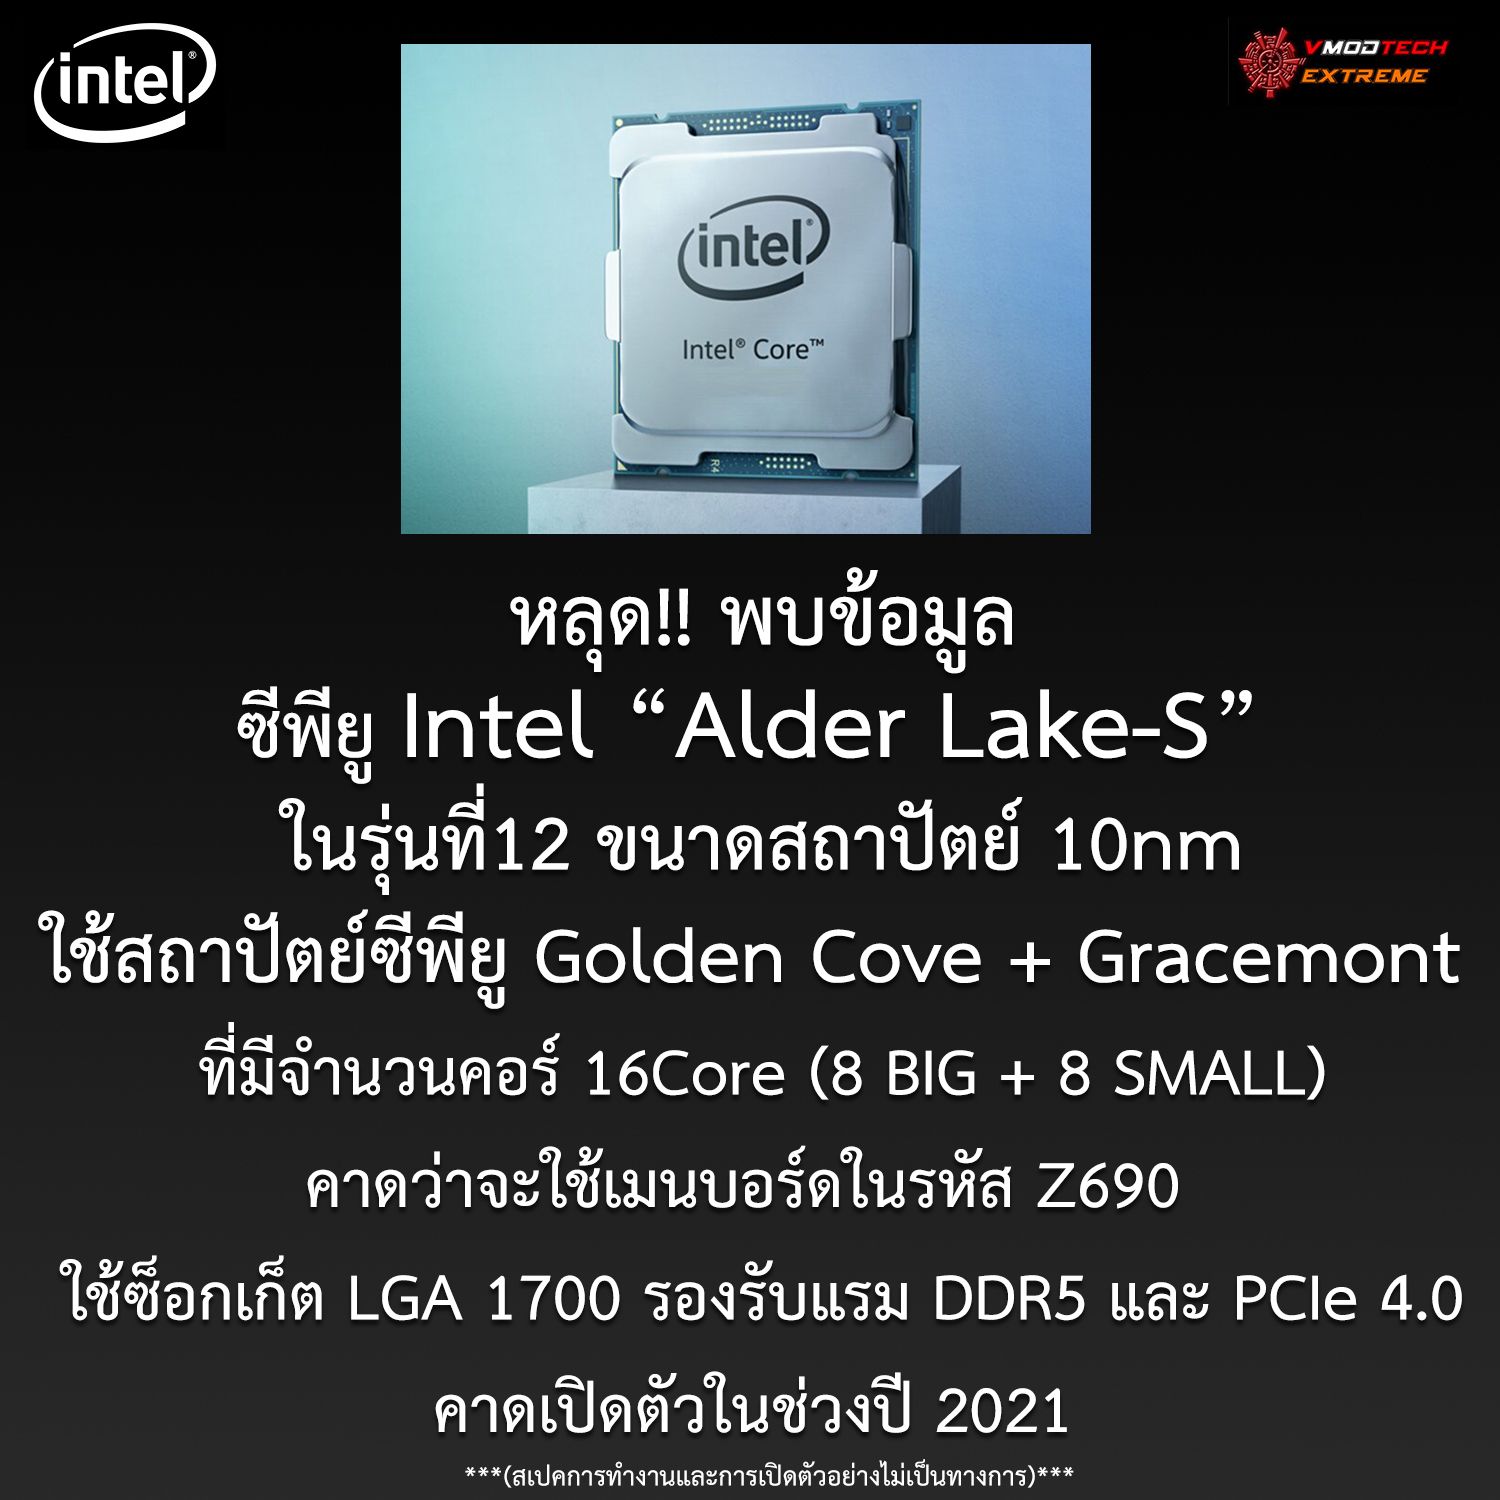 หลุด!! พบข้อมูลซีพียู Intel “Alder Lake-S” ในรุ่นที่12 ใช้ซ็อกเก็ต LGA 1700 รองรับแรม DDR5 และ PCIe 4.0 